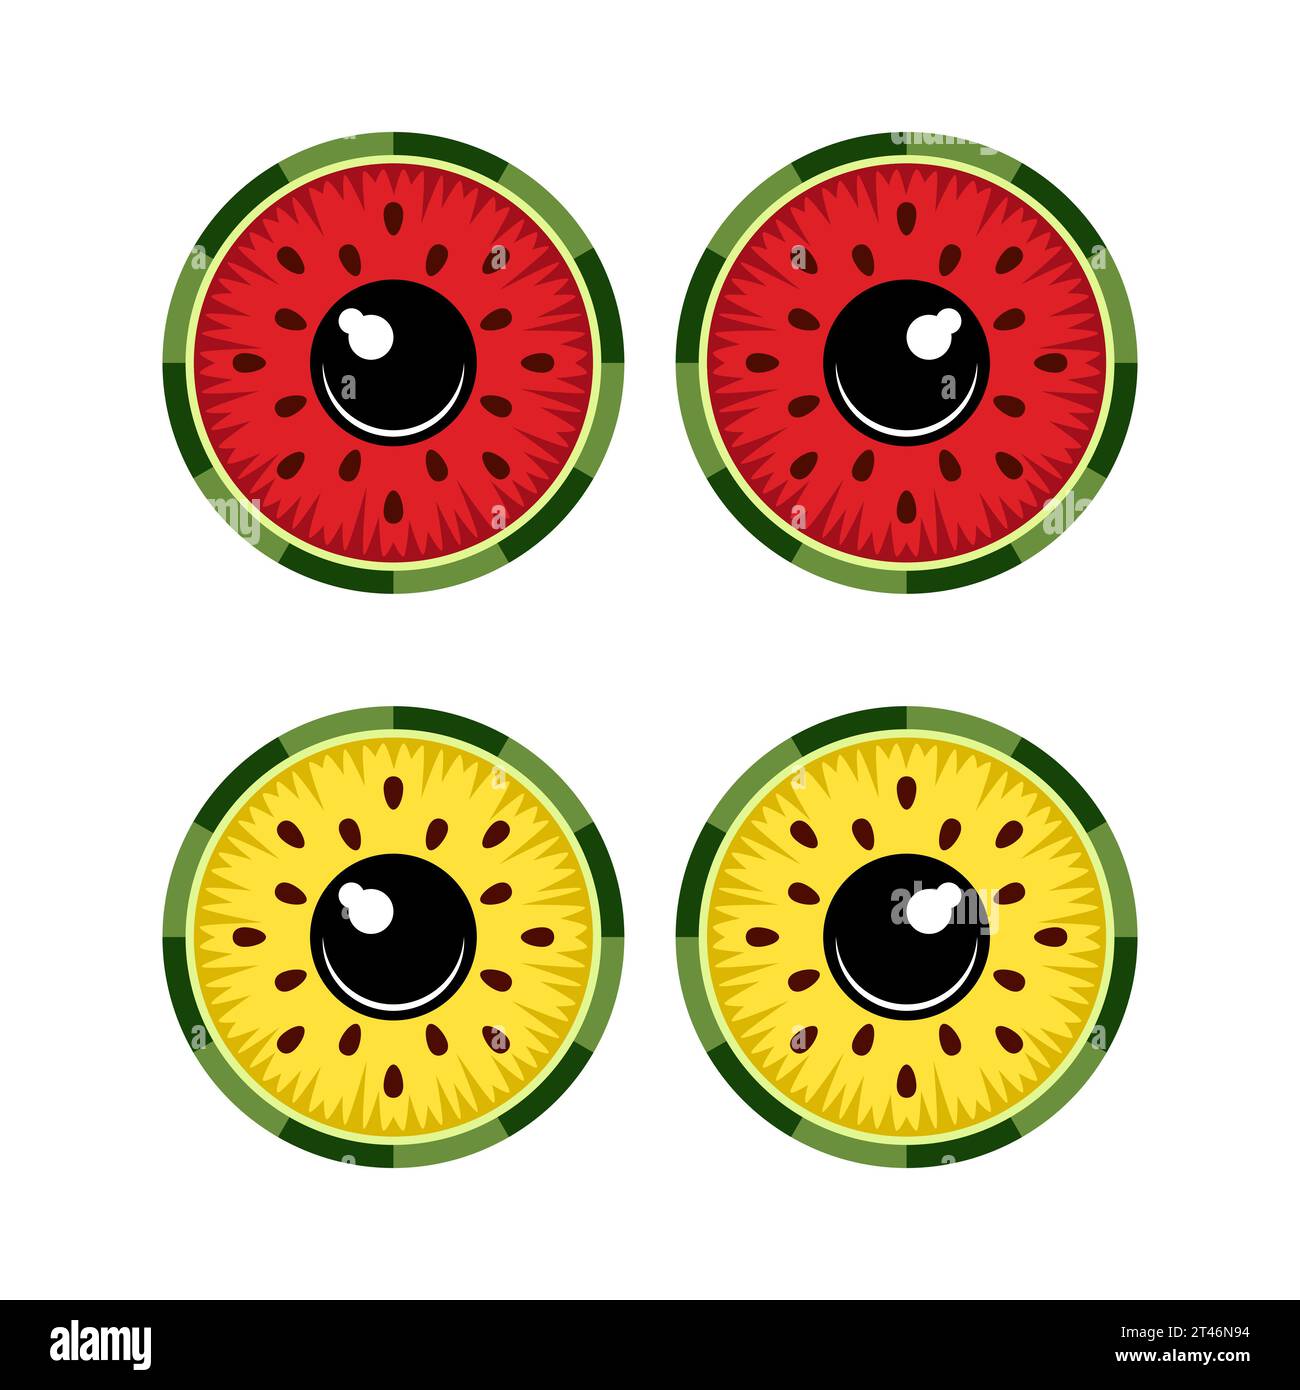 Immagine a colori dell'occhio fatta da fette di succosa anguria. Oggetti vettoriali isolati su sfondo bianco. Illustrazione Vettoriale